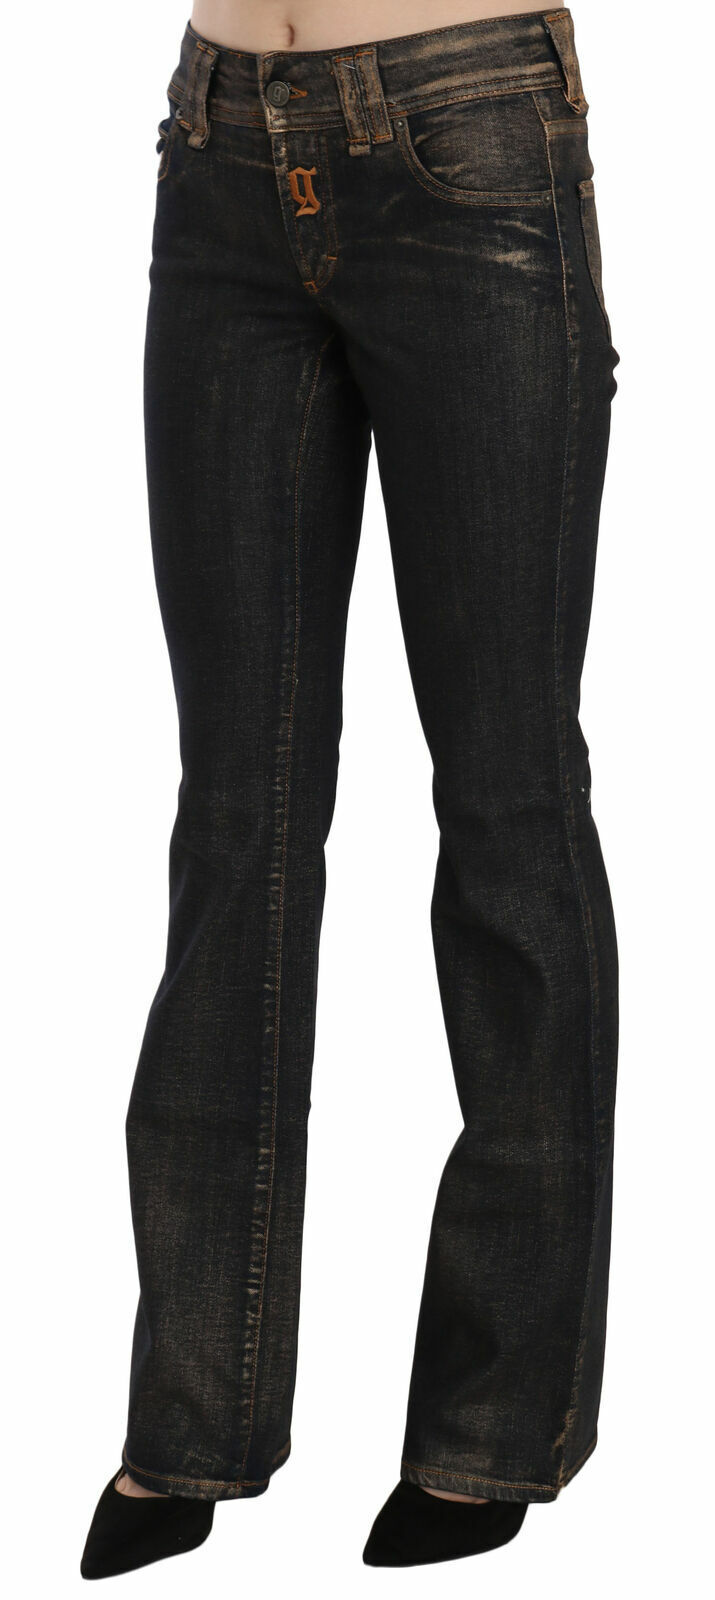 GALLIANO Jeans Cotton Black Washed Mid Waist Flared Denim Pants s. W26 RRP $500 Uzupełnienie krajowe